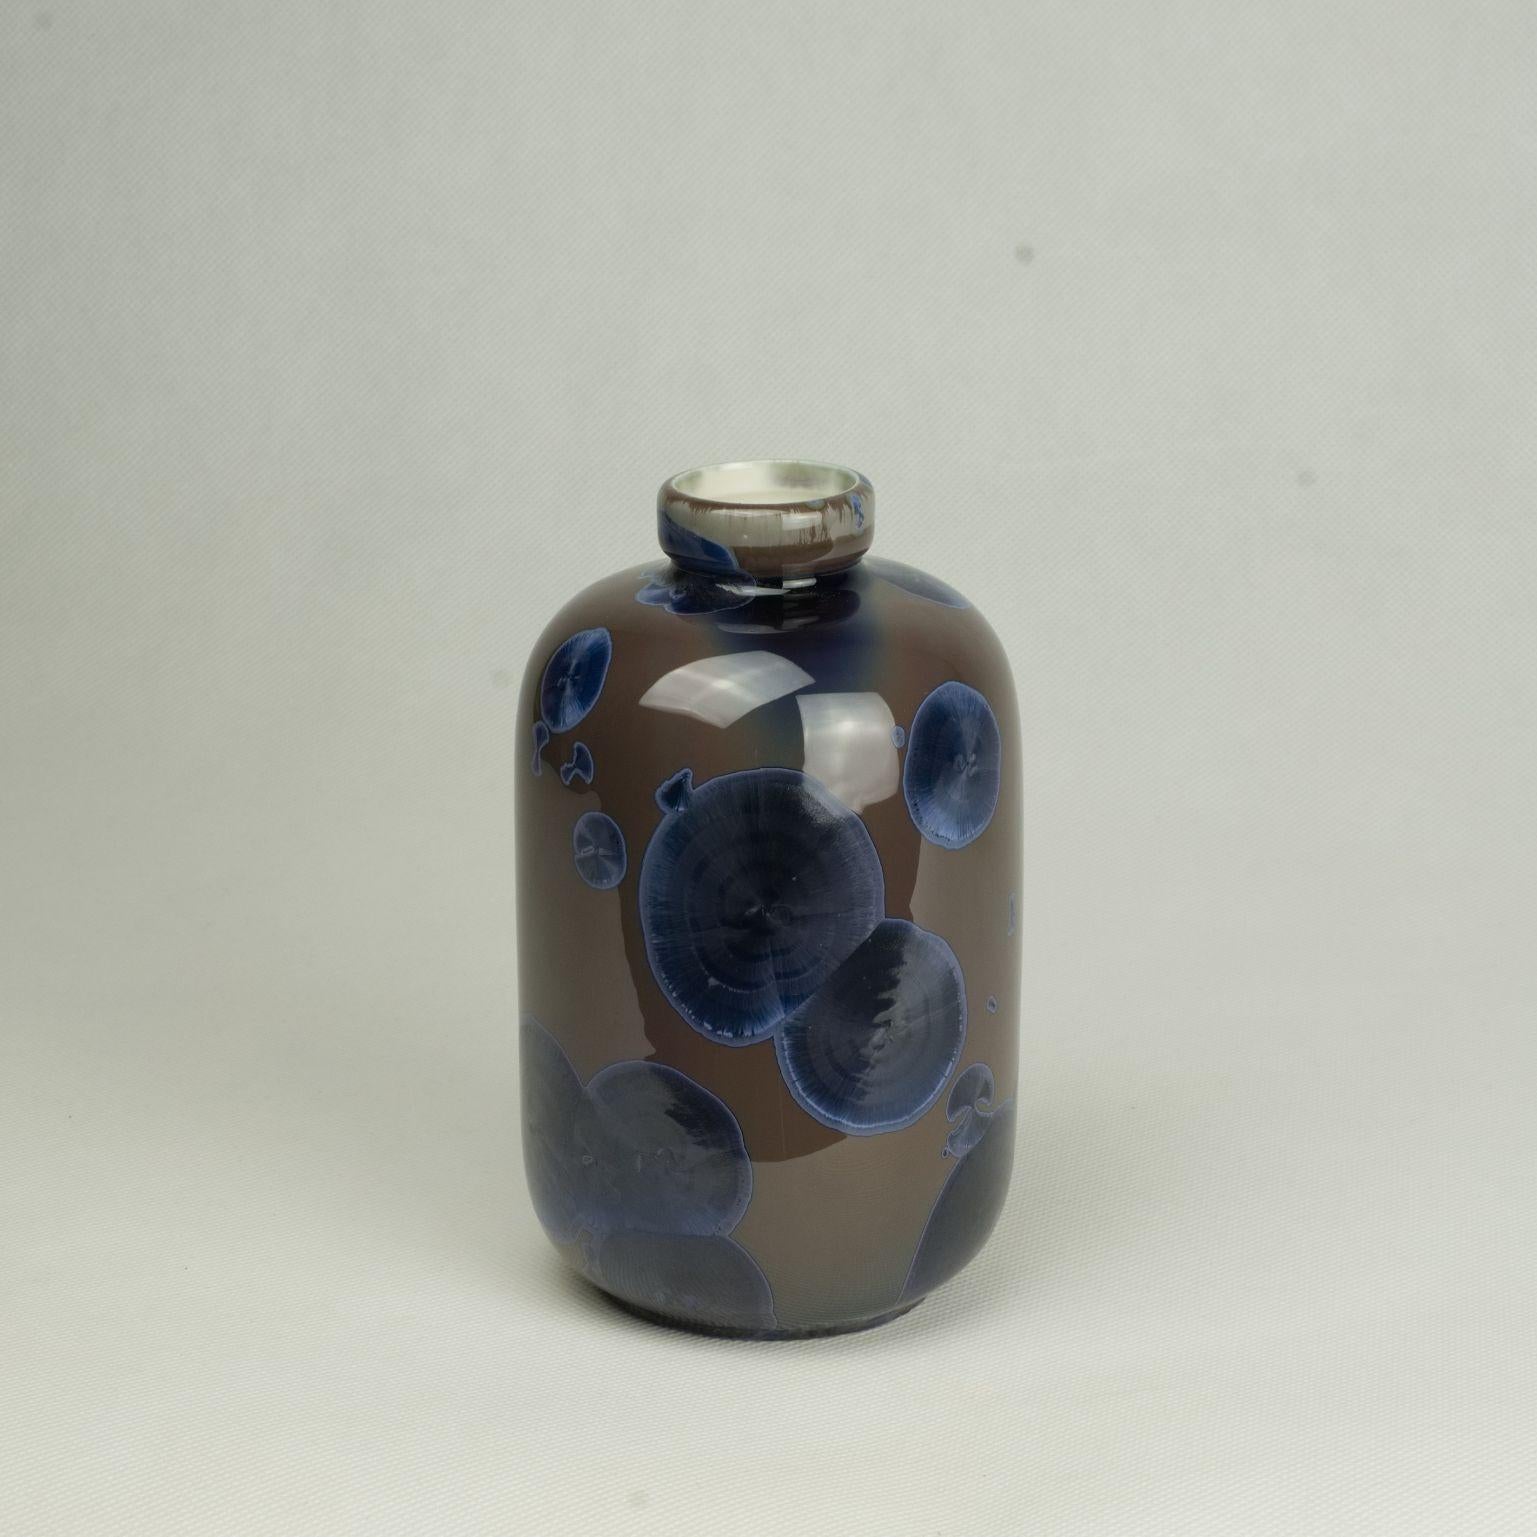 Kleine Vase von Milan Pekar
Abmessungen: D10 x H22 cm
MATERIALIEN: Glasur, Porzellan

Handgefertigt in der Tschechischen Republik. 

Auch erhältlich: verschiedene Farben und Muster

Gründung eines eigenen Studios im August 2009 - Schwerpunkt: